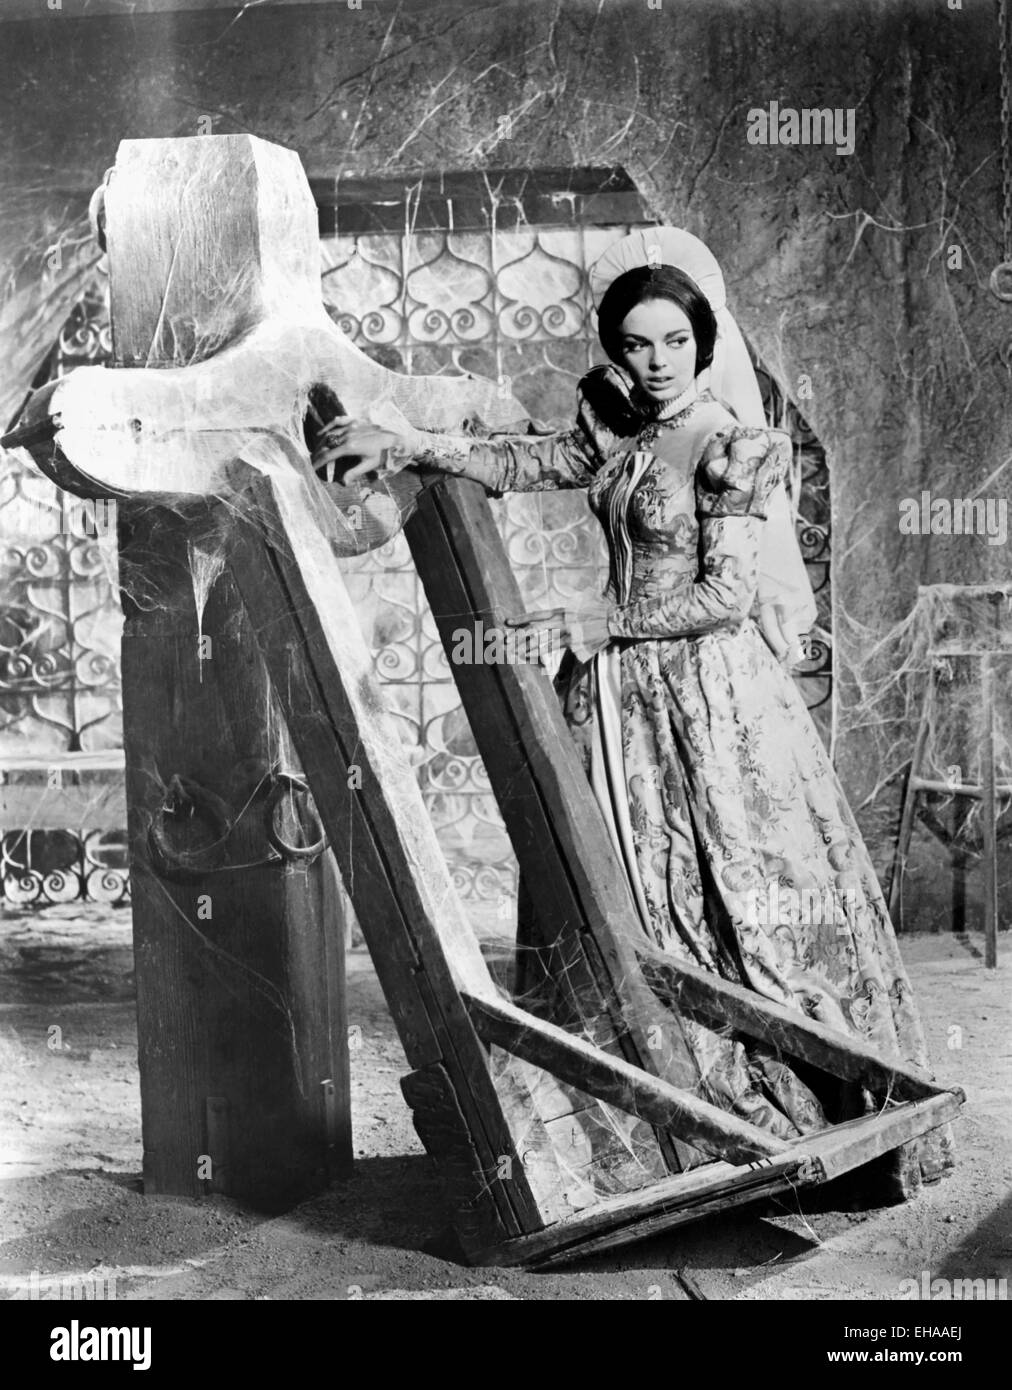 Barbara Steele, sul set del film " Il Pozzo e il pendolo', 1961 Foto Stock